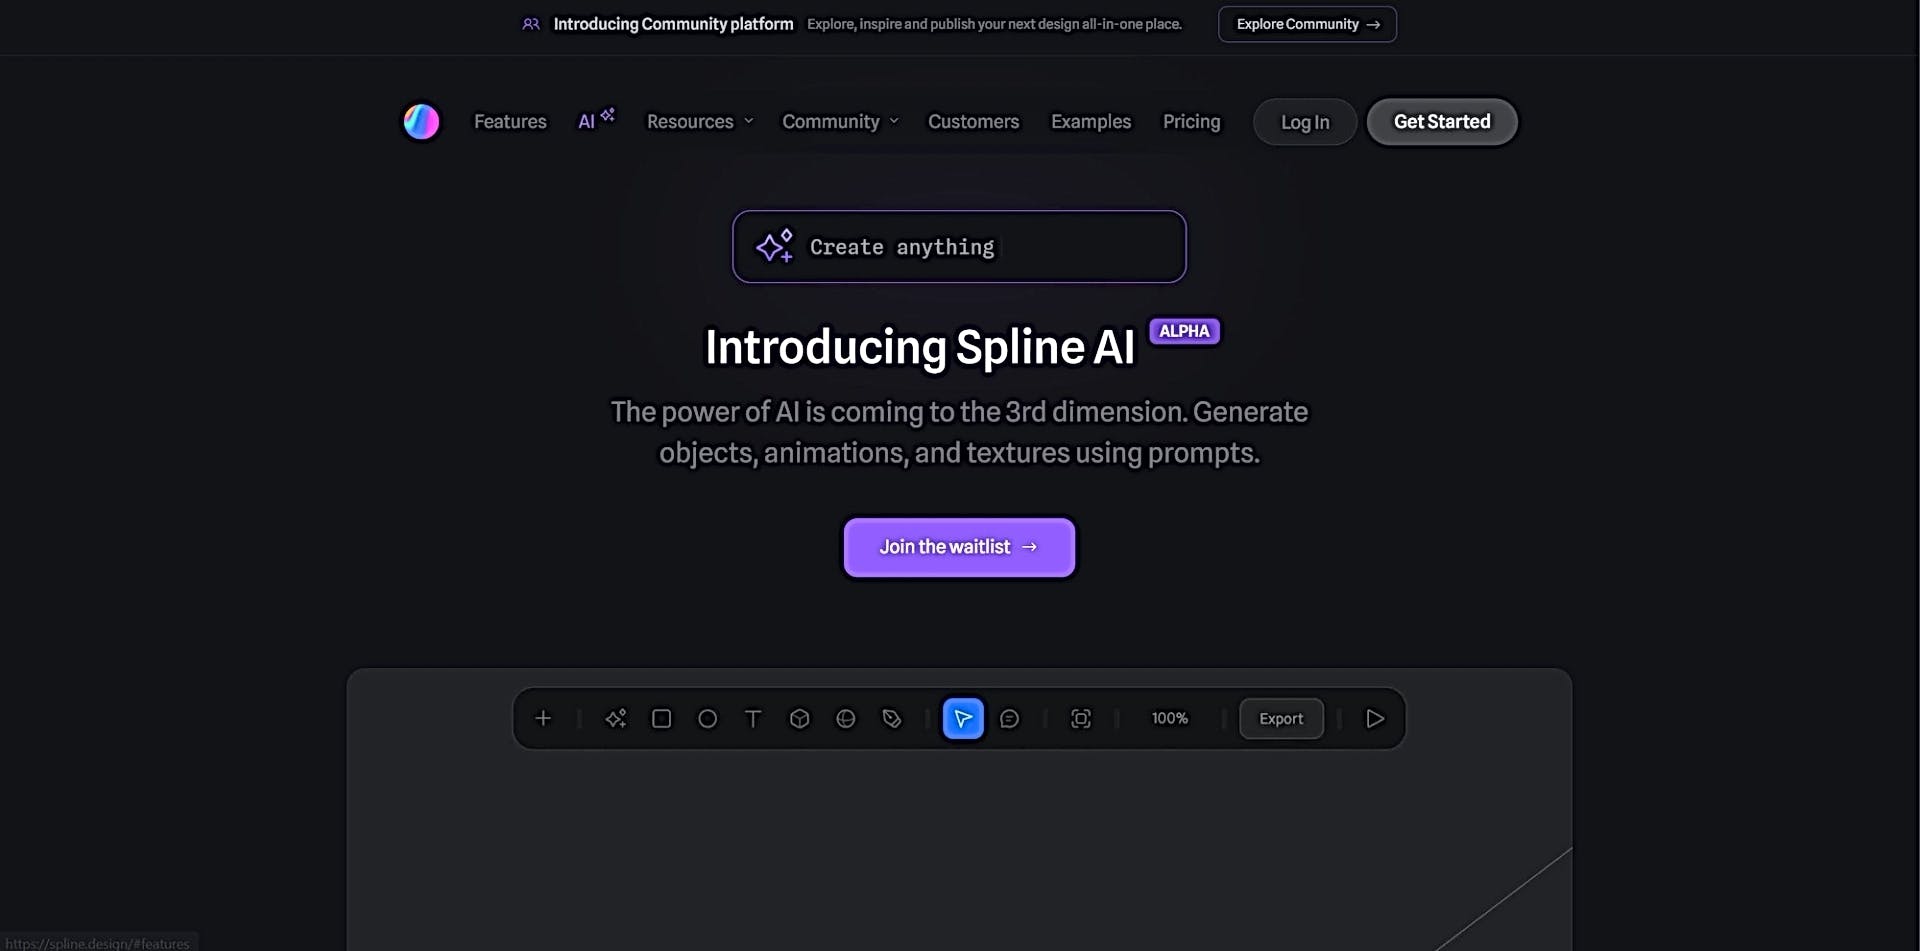 Spline AI featured